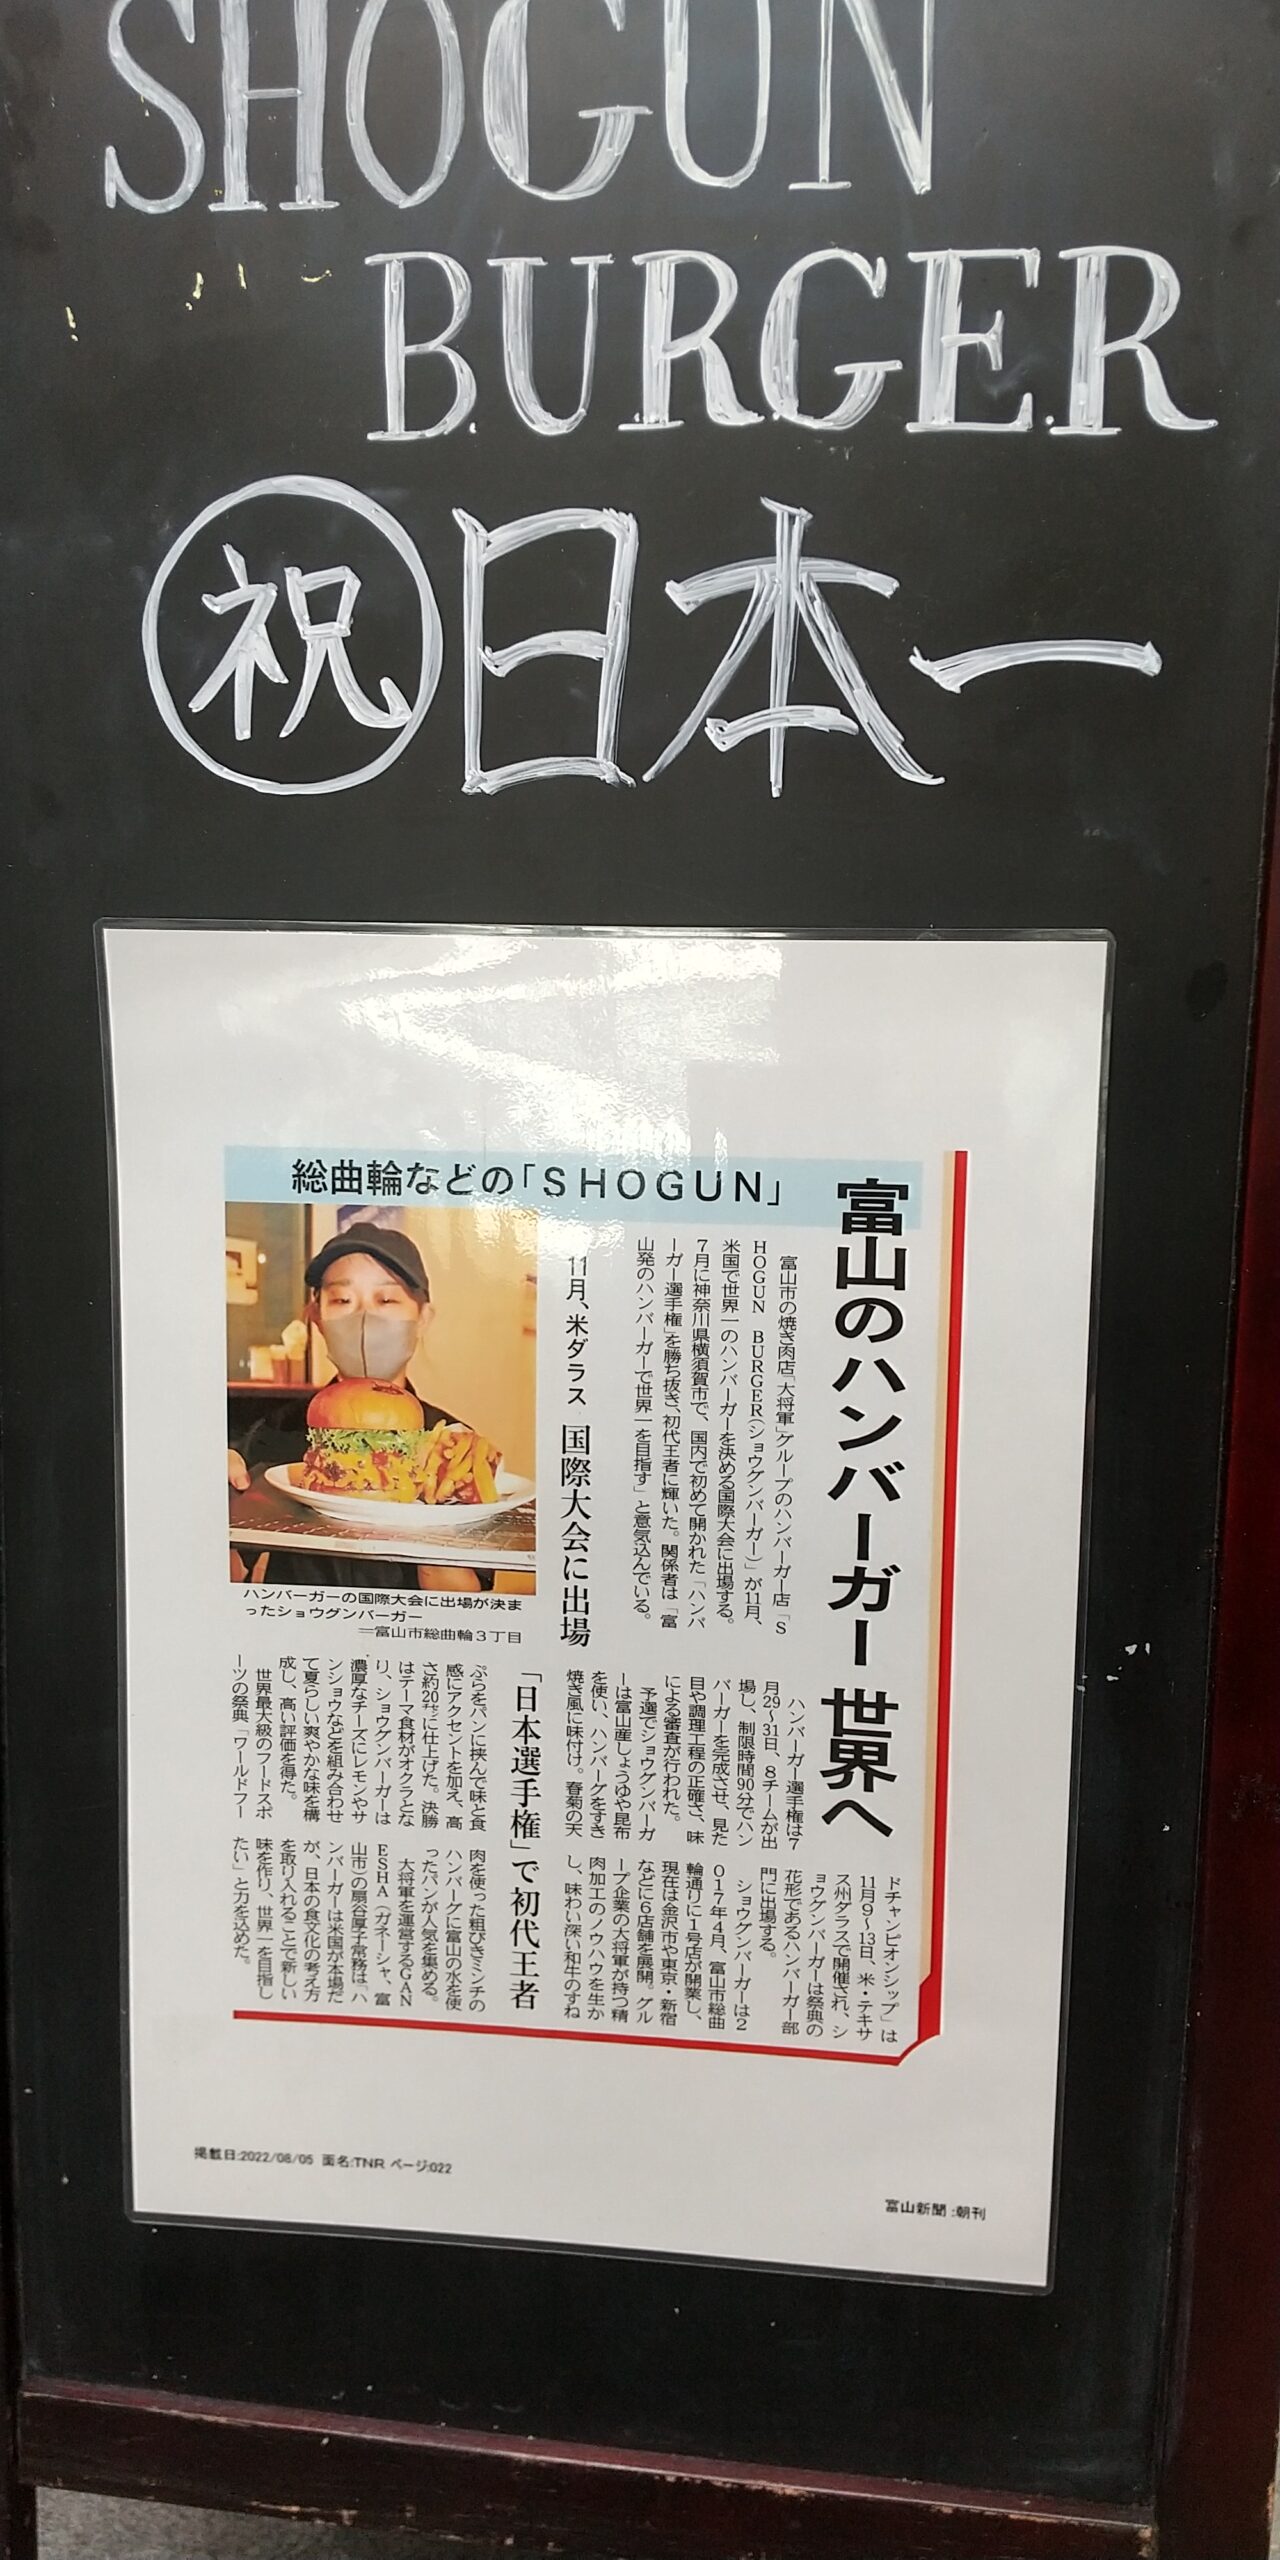 扇谷厚子さん率いるショーグンバーガーが日本一になったことを伝える地元紙